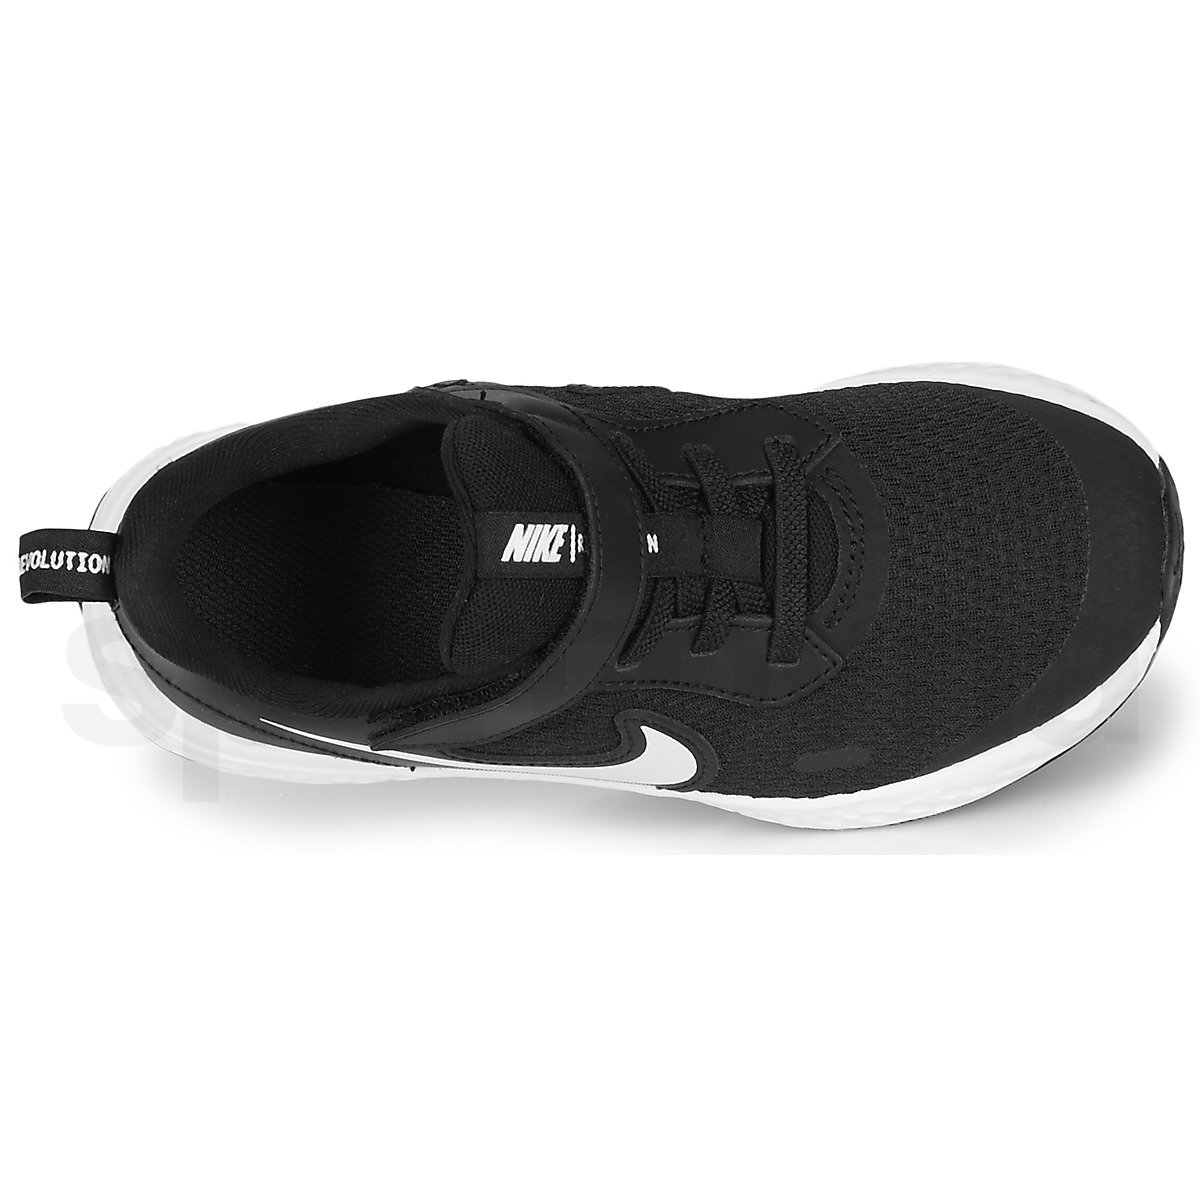 Obuv Nike Revolution 5 - černá/bílá